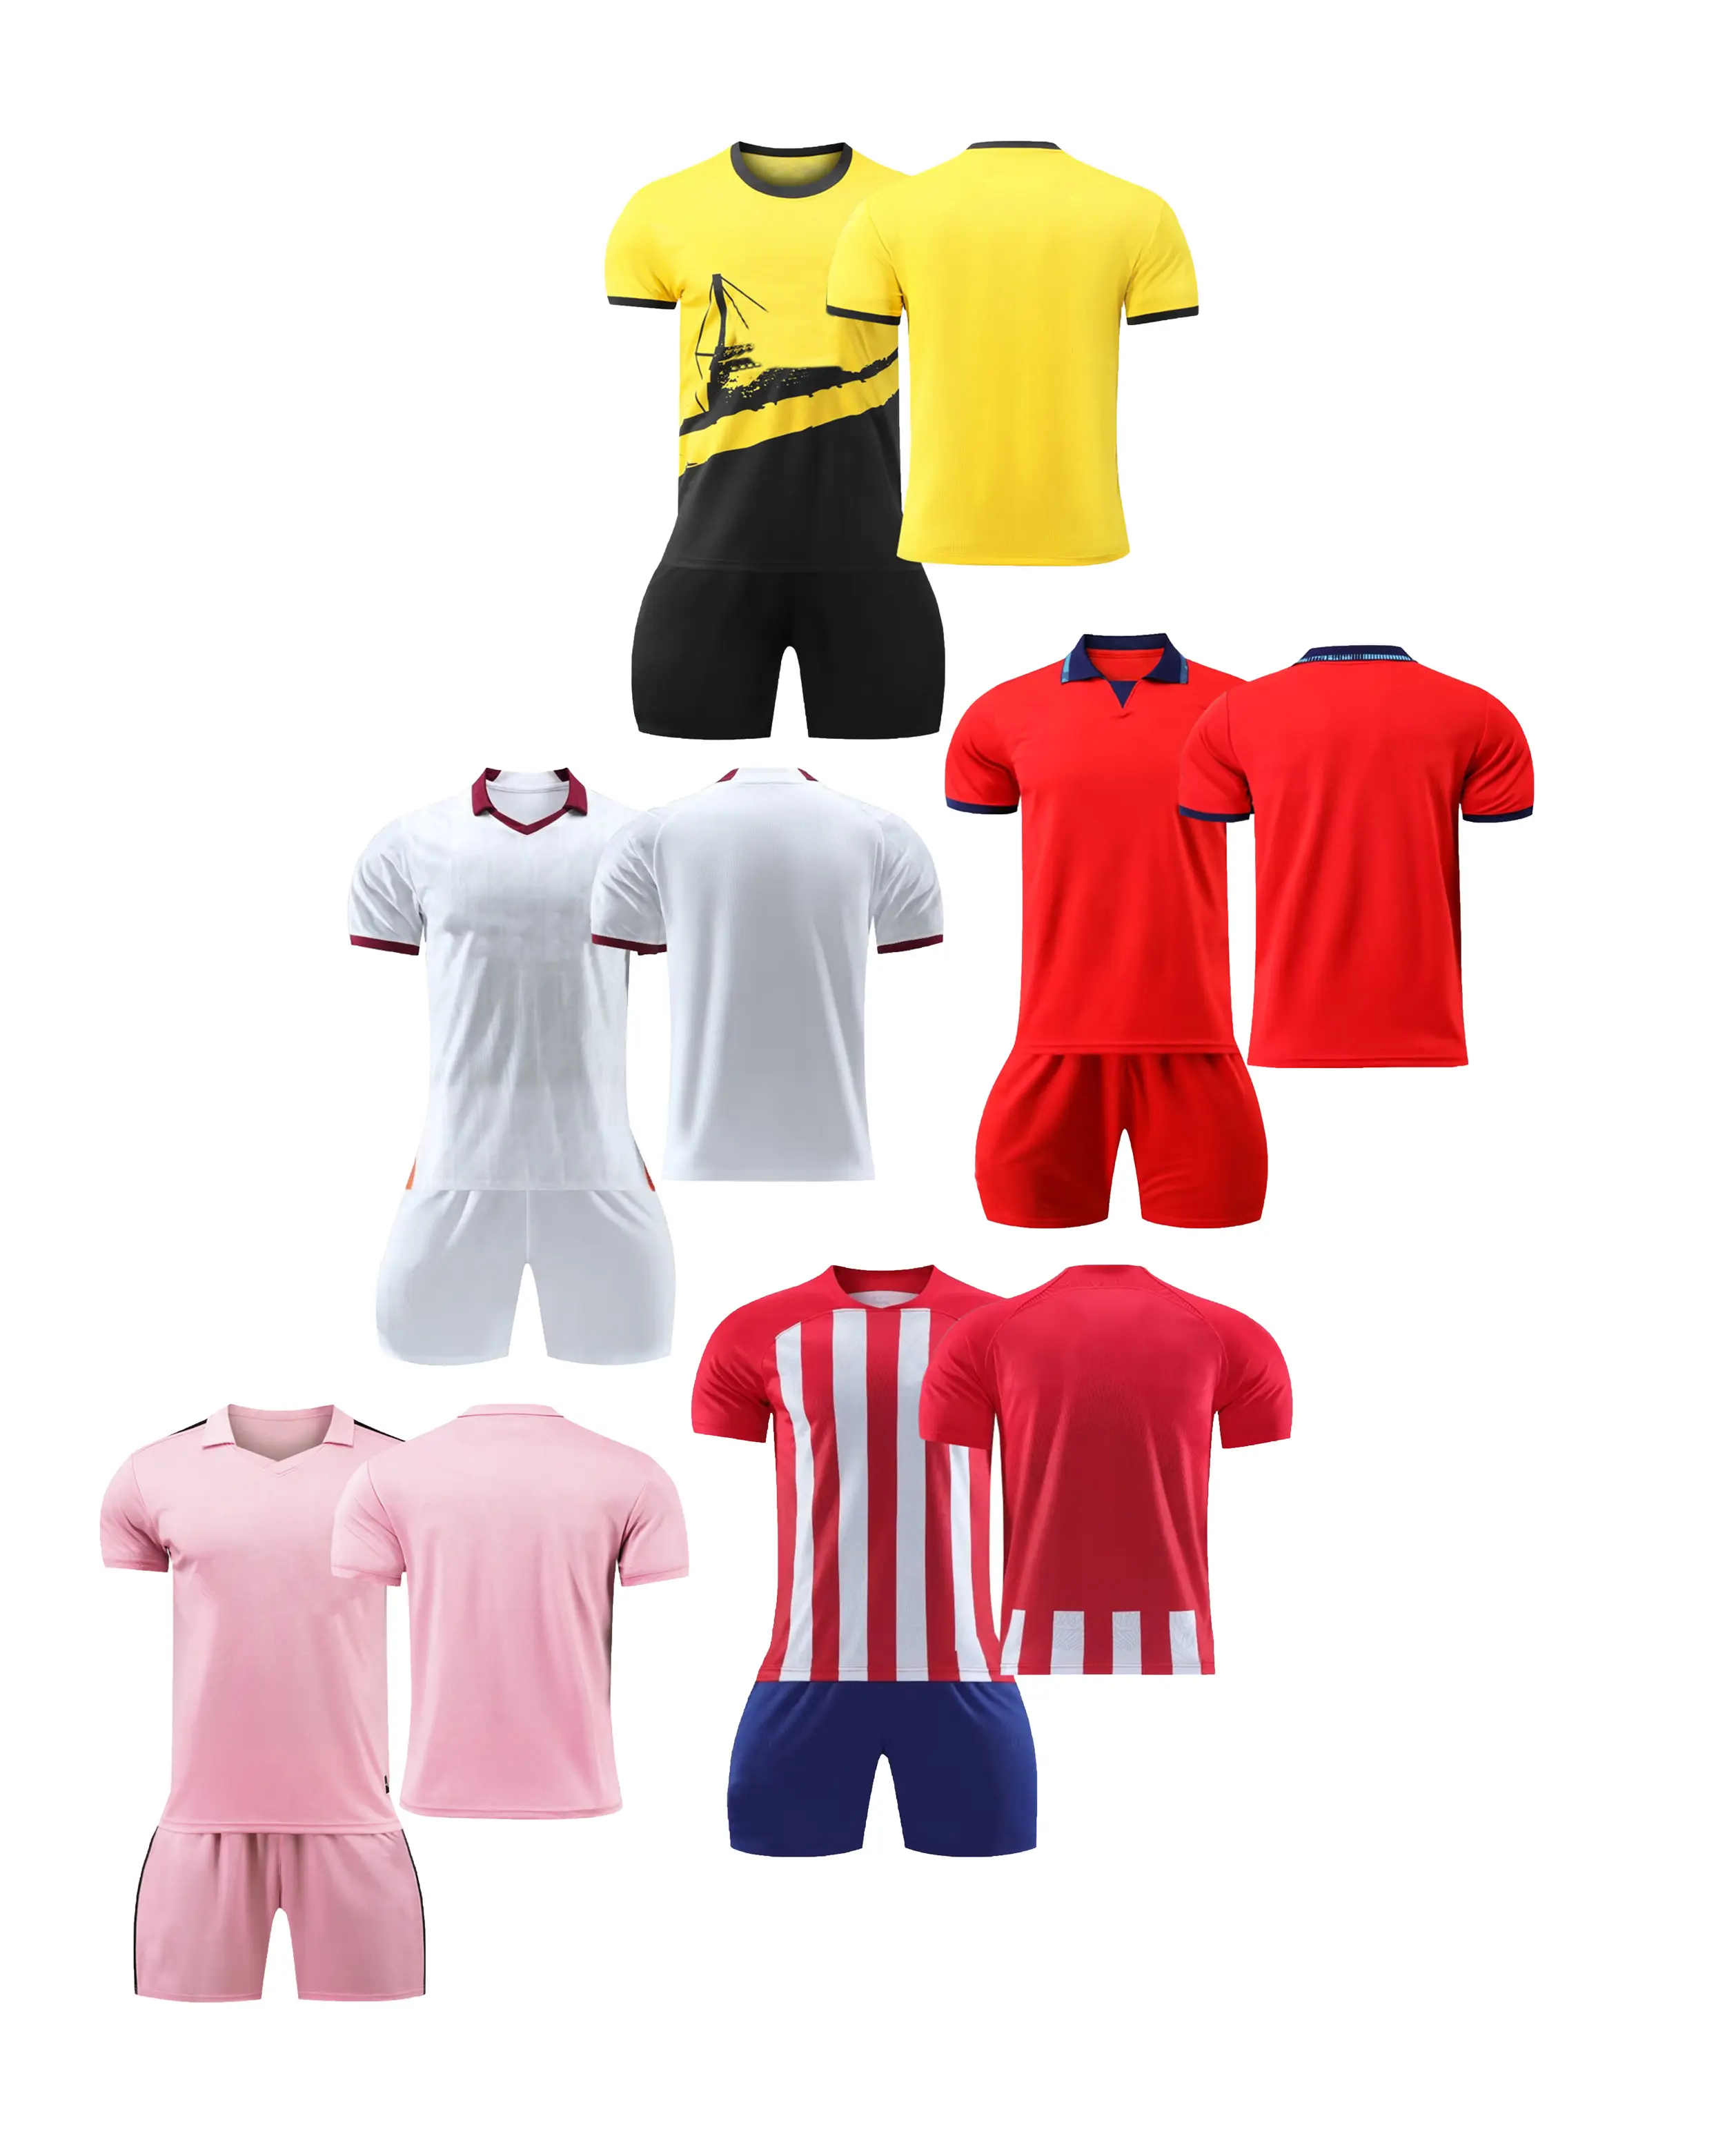 24-25 lotes de juego de camisetas de fútbol de versión iluminada para adultos y niños, número de impresión de camiseta de entrenamiento en stock